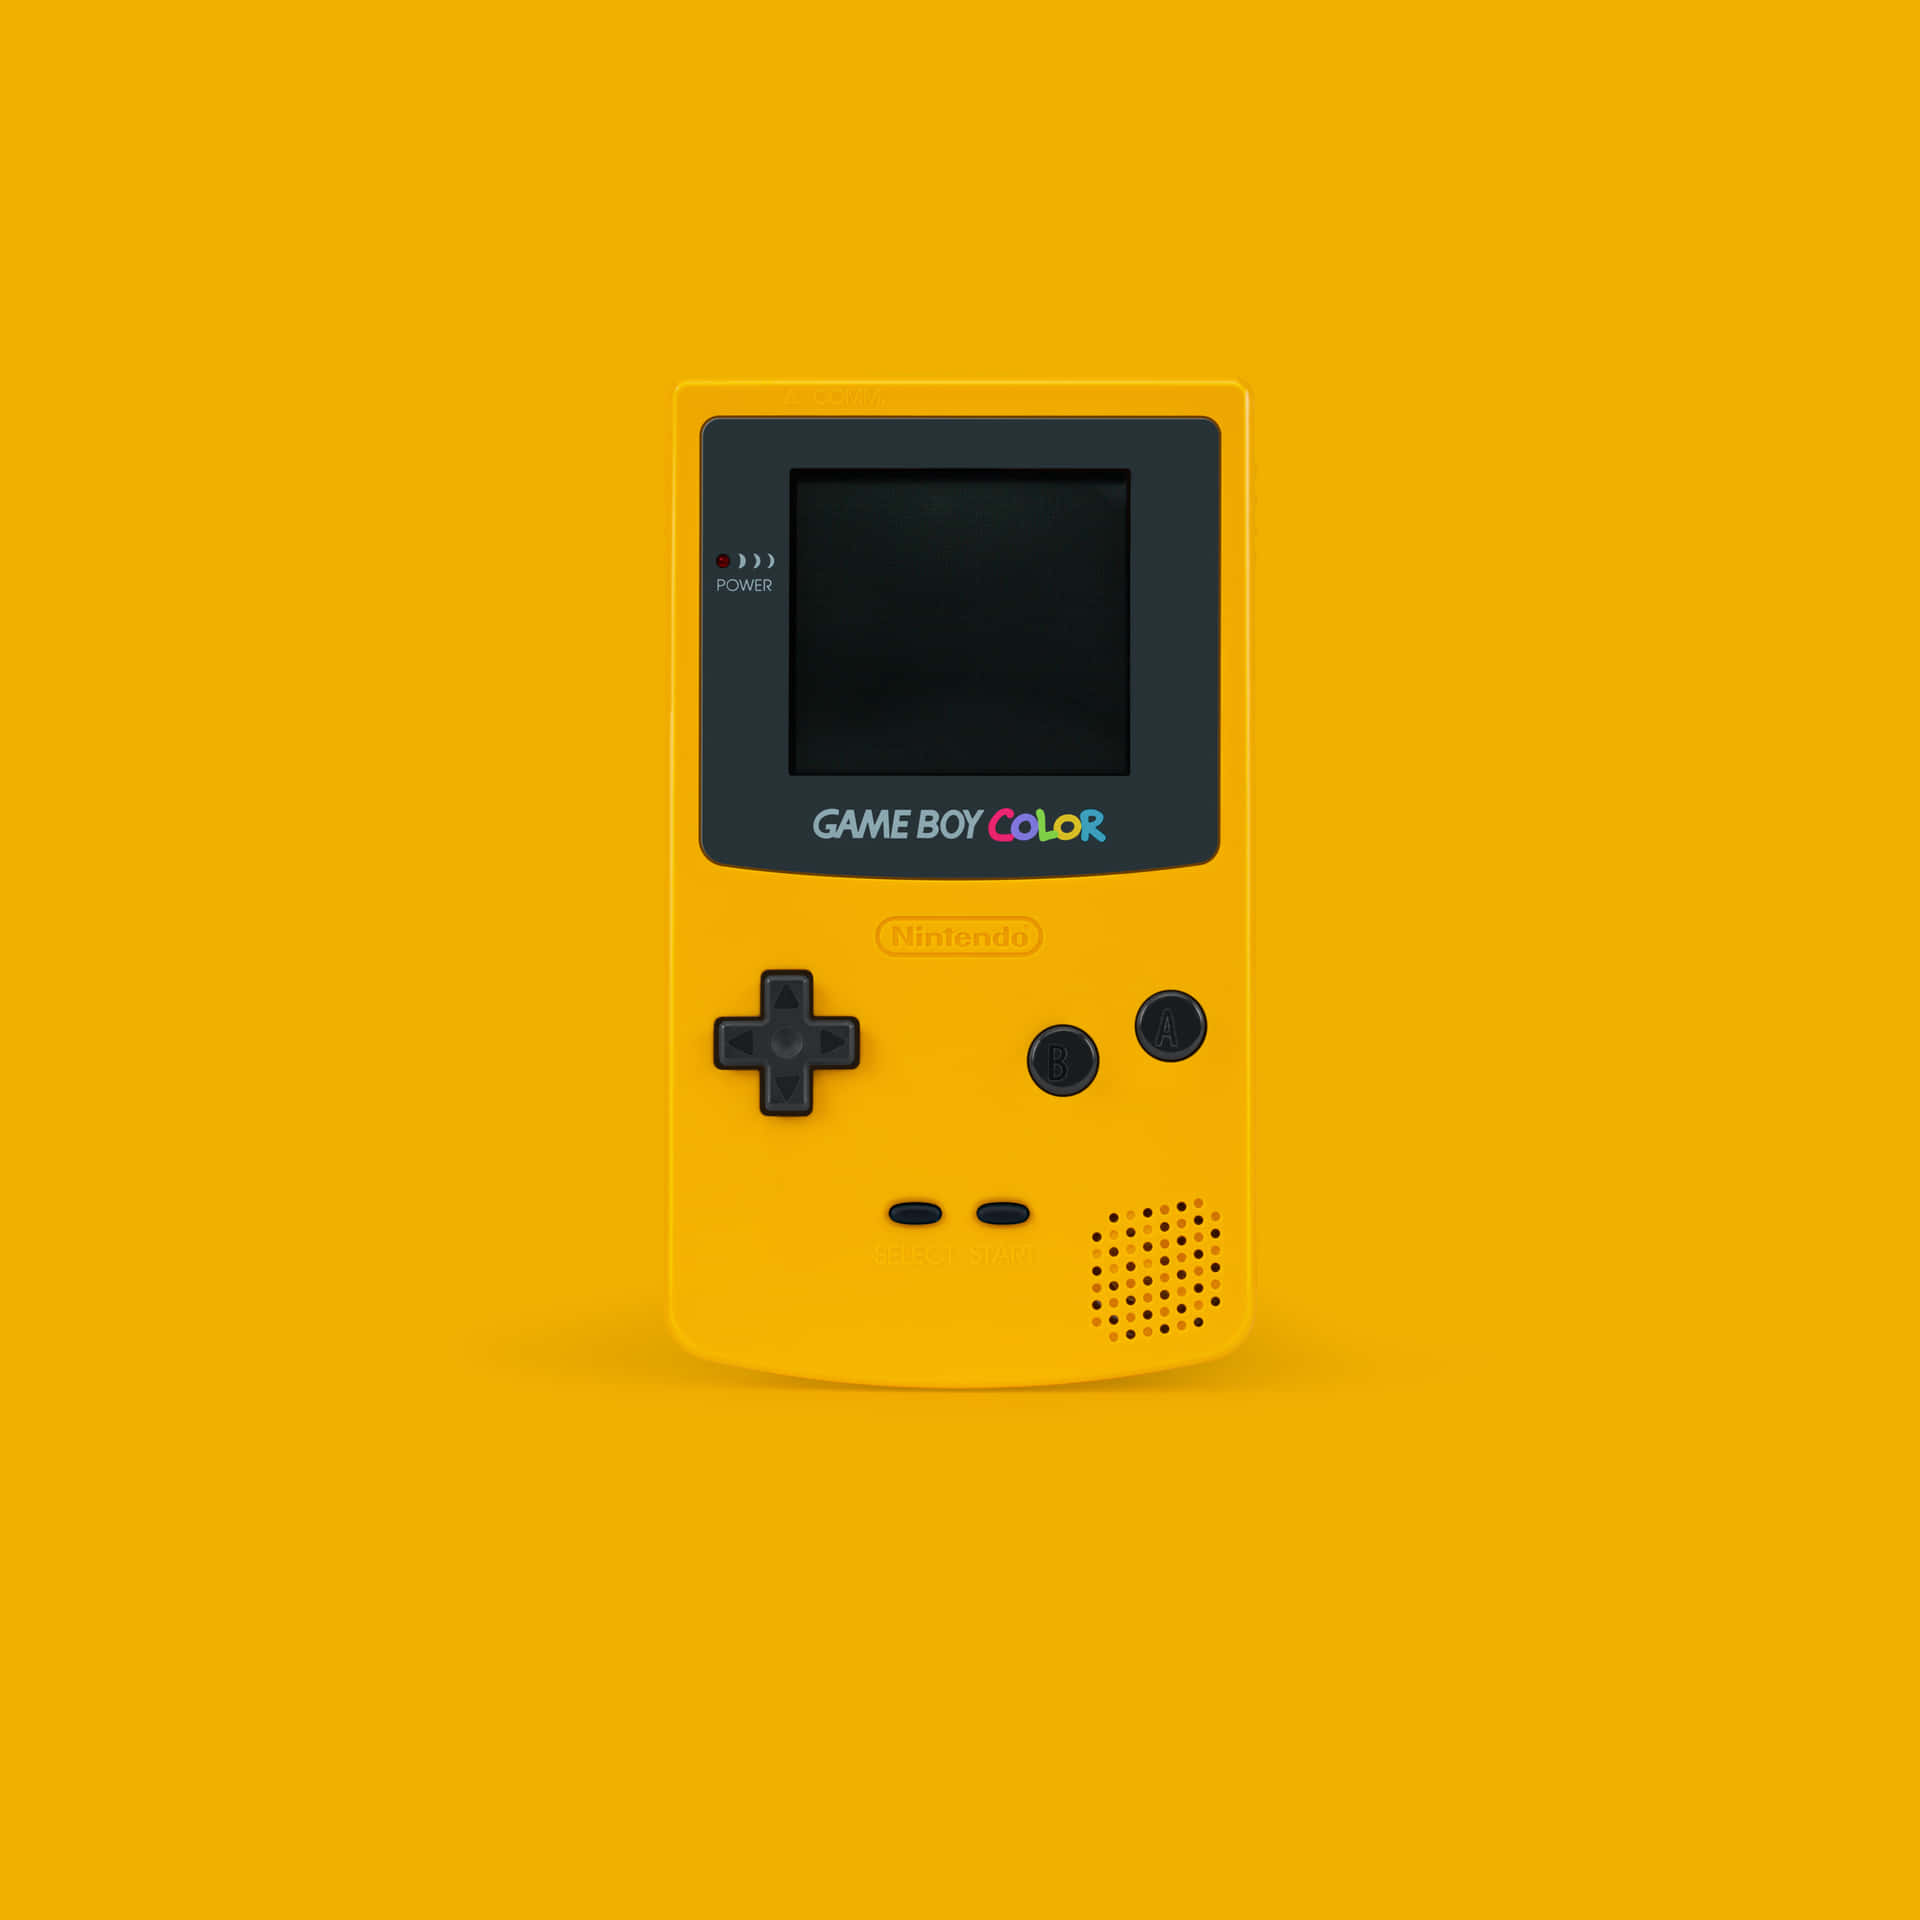 Gulbakgrund För Nintendo Game Boy Color.